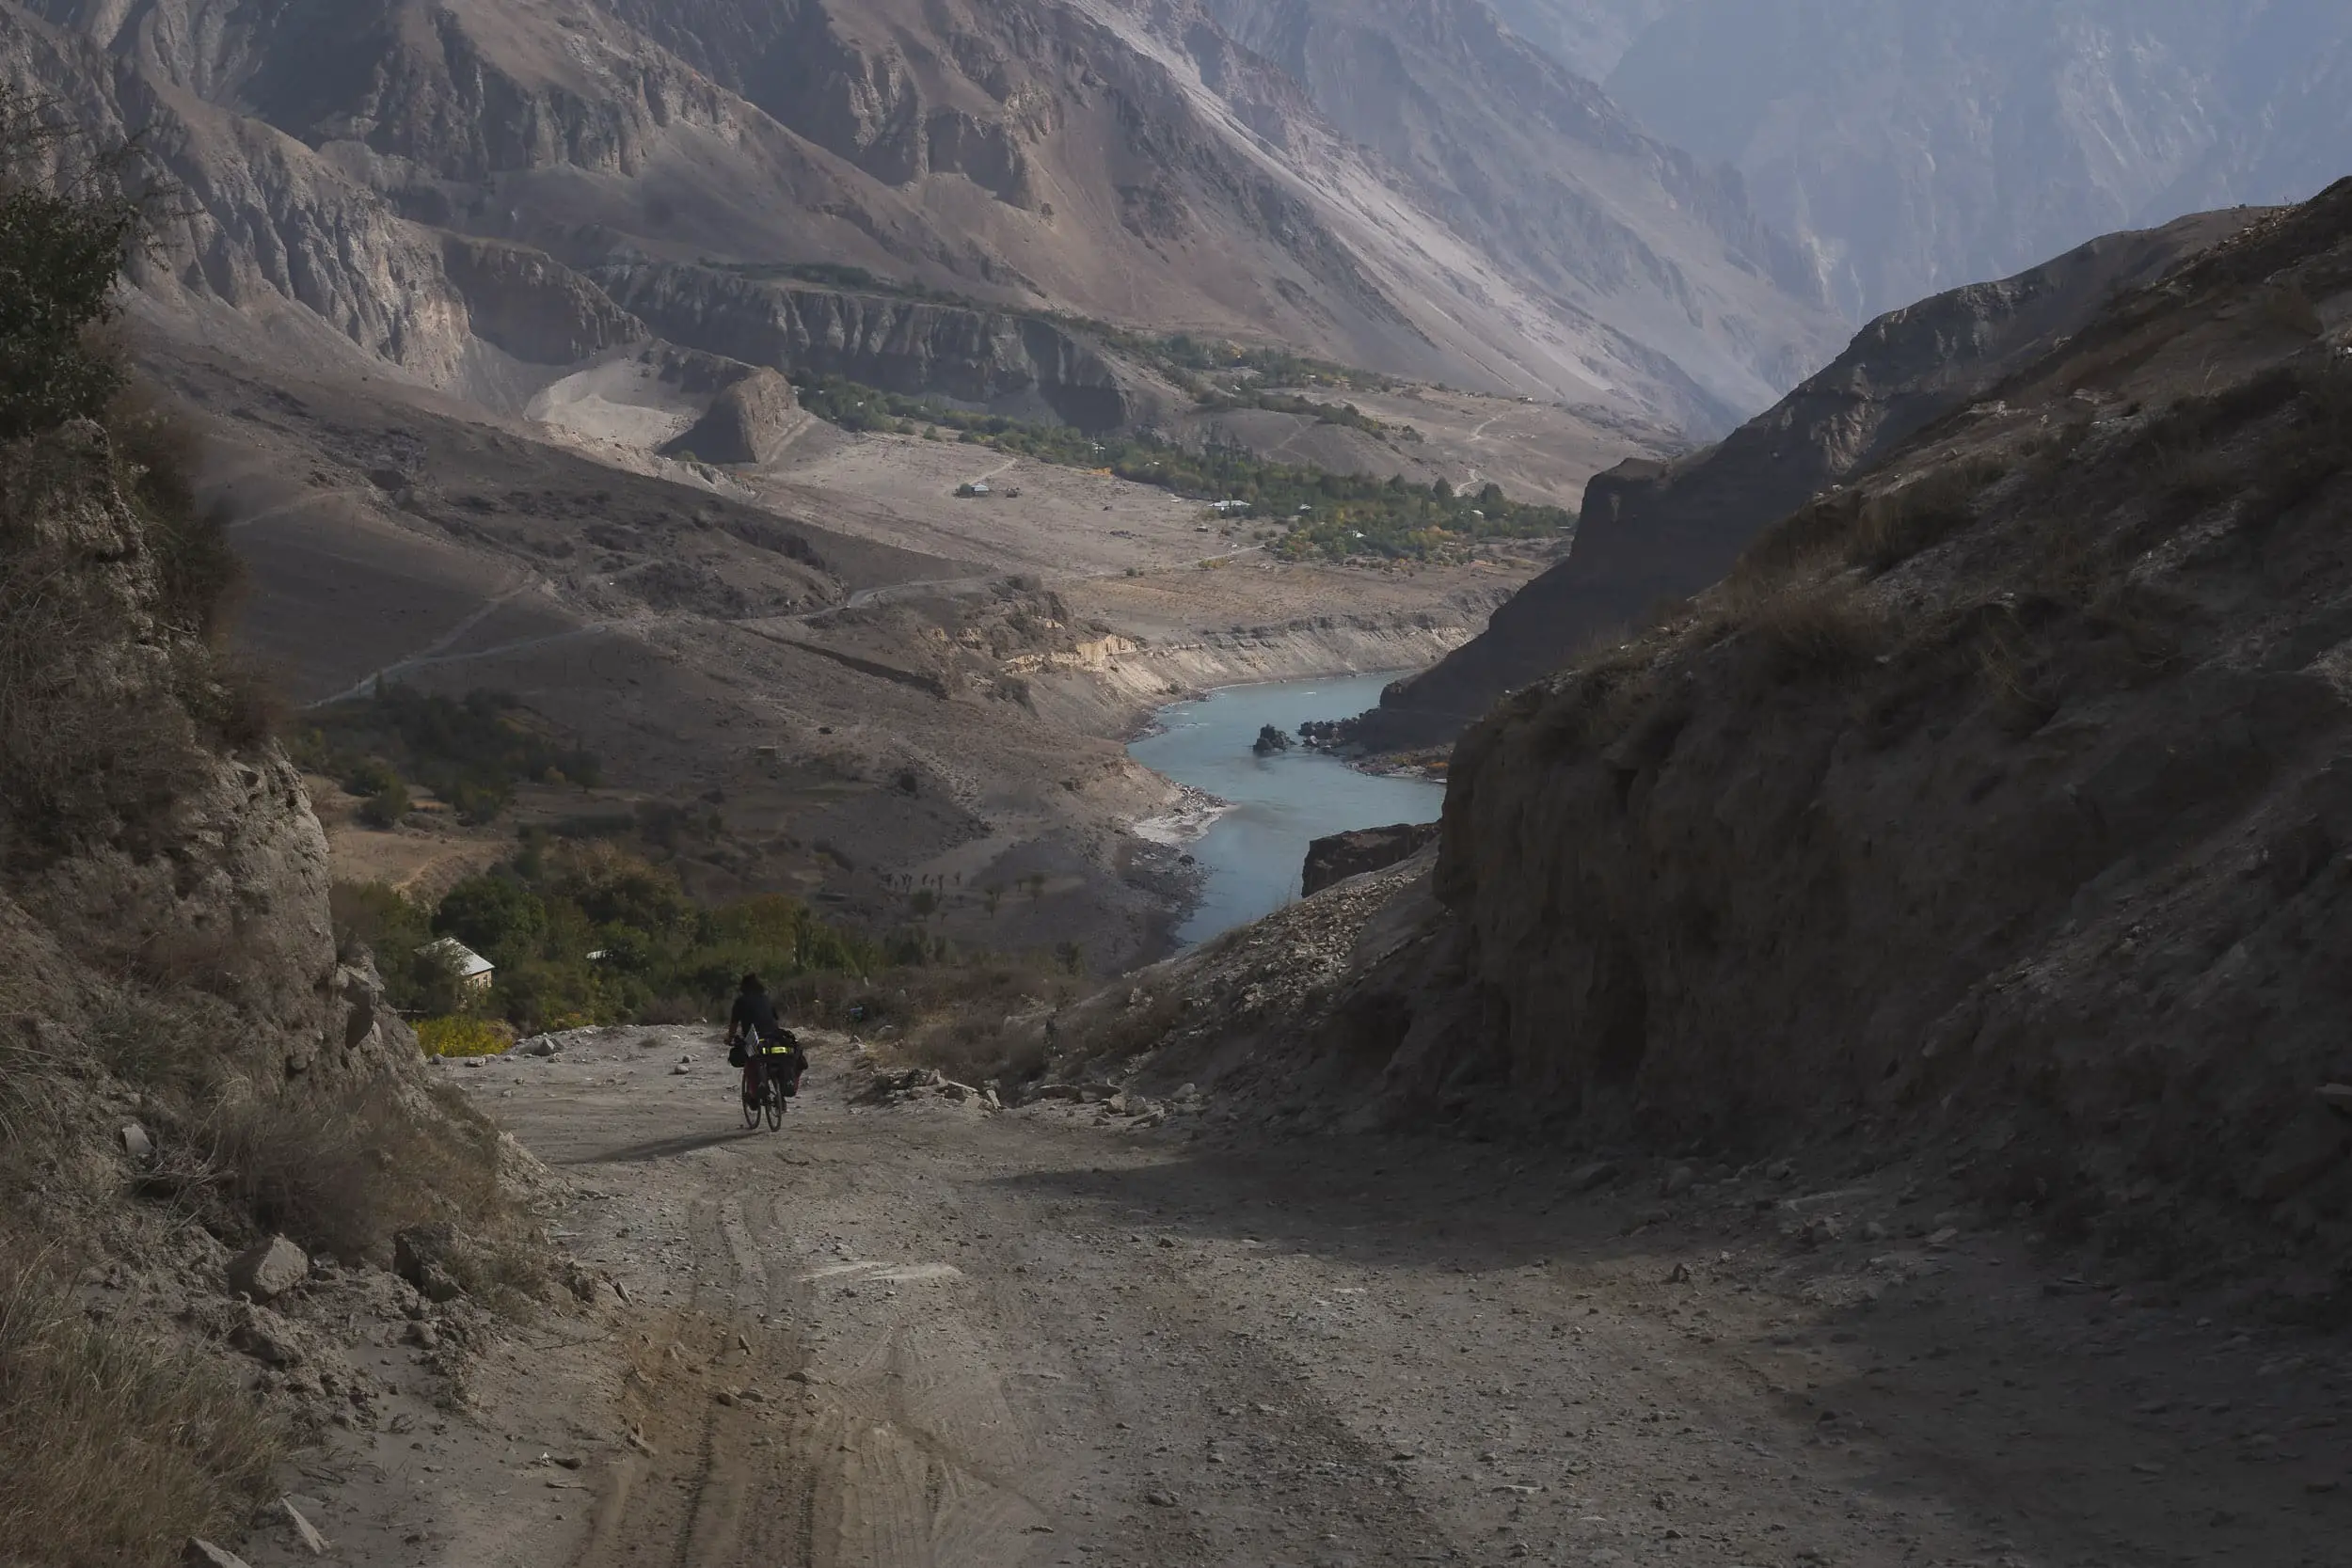 M41 Pamir roads